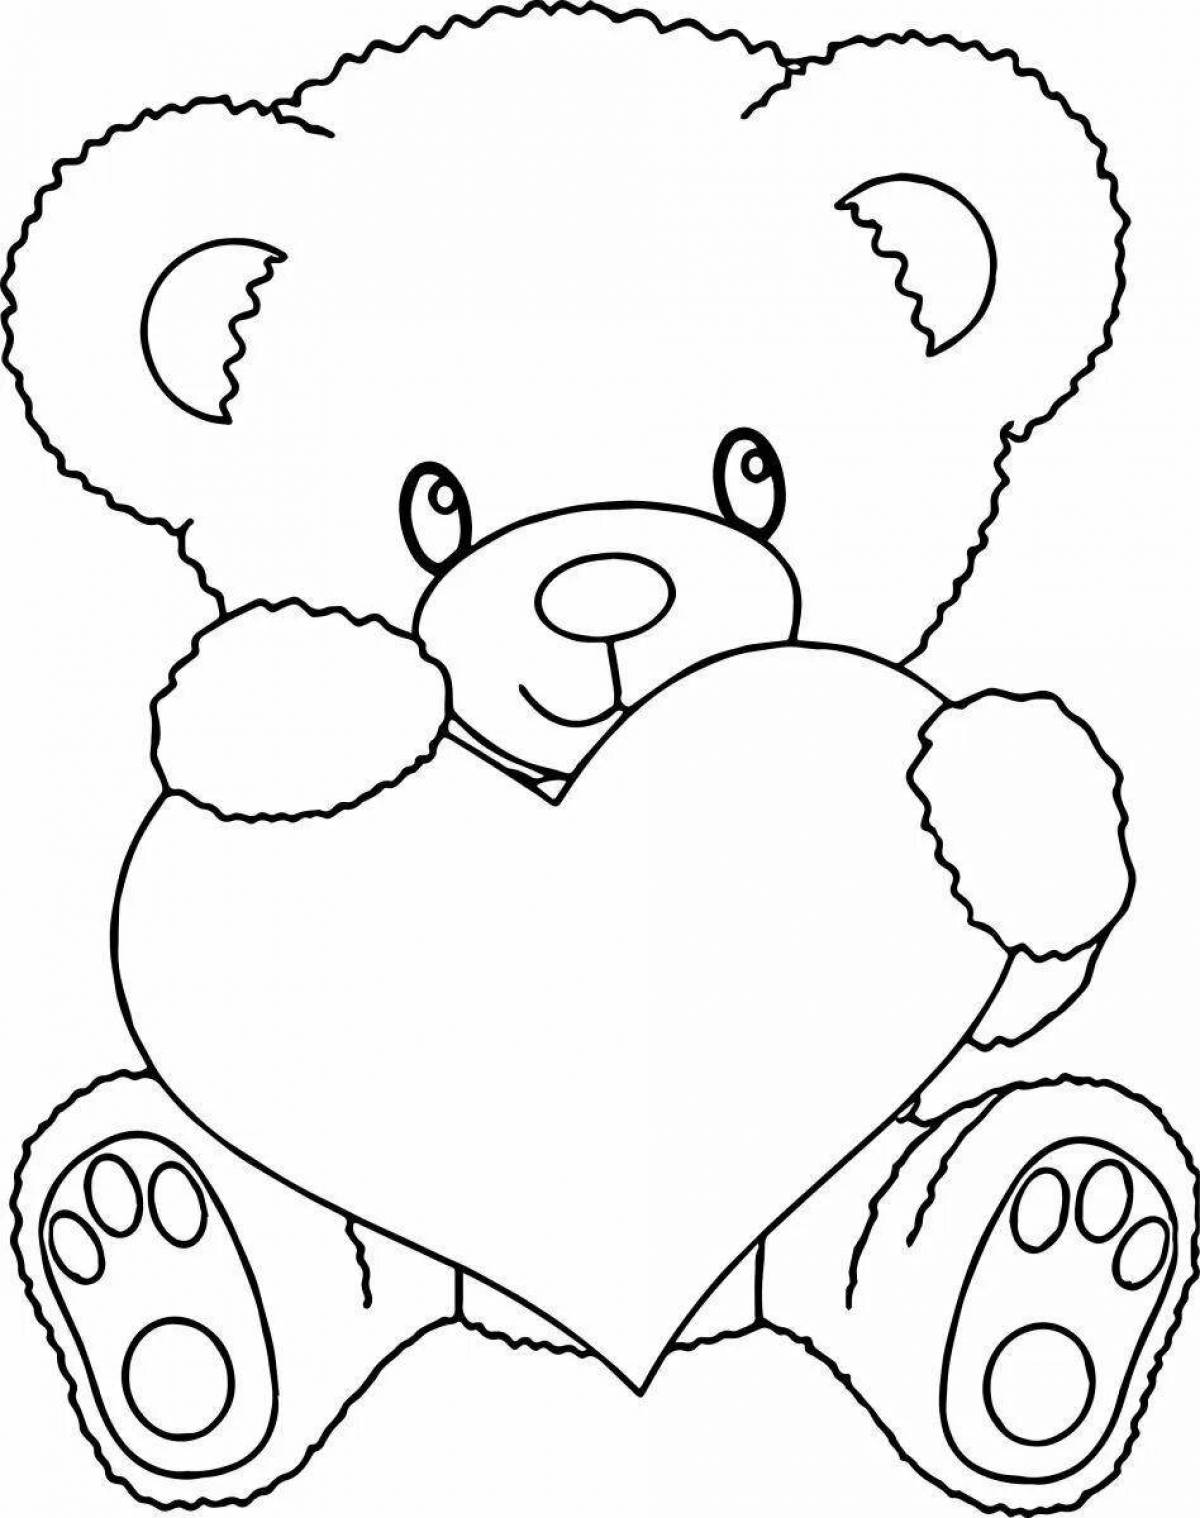 Причудливый медведь с рисунком сердца